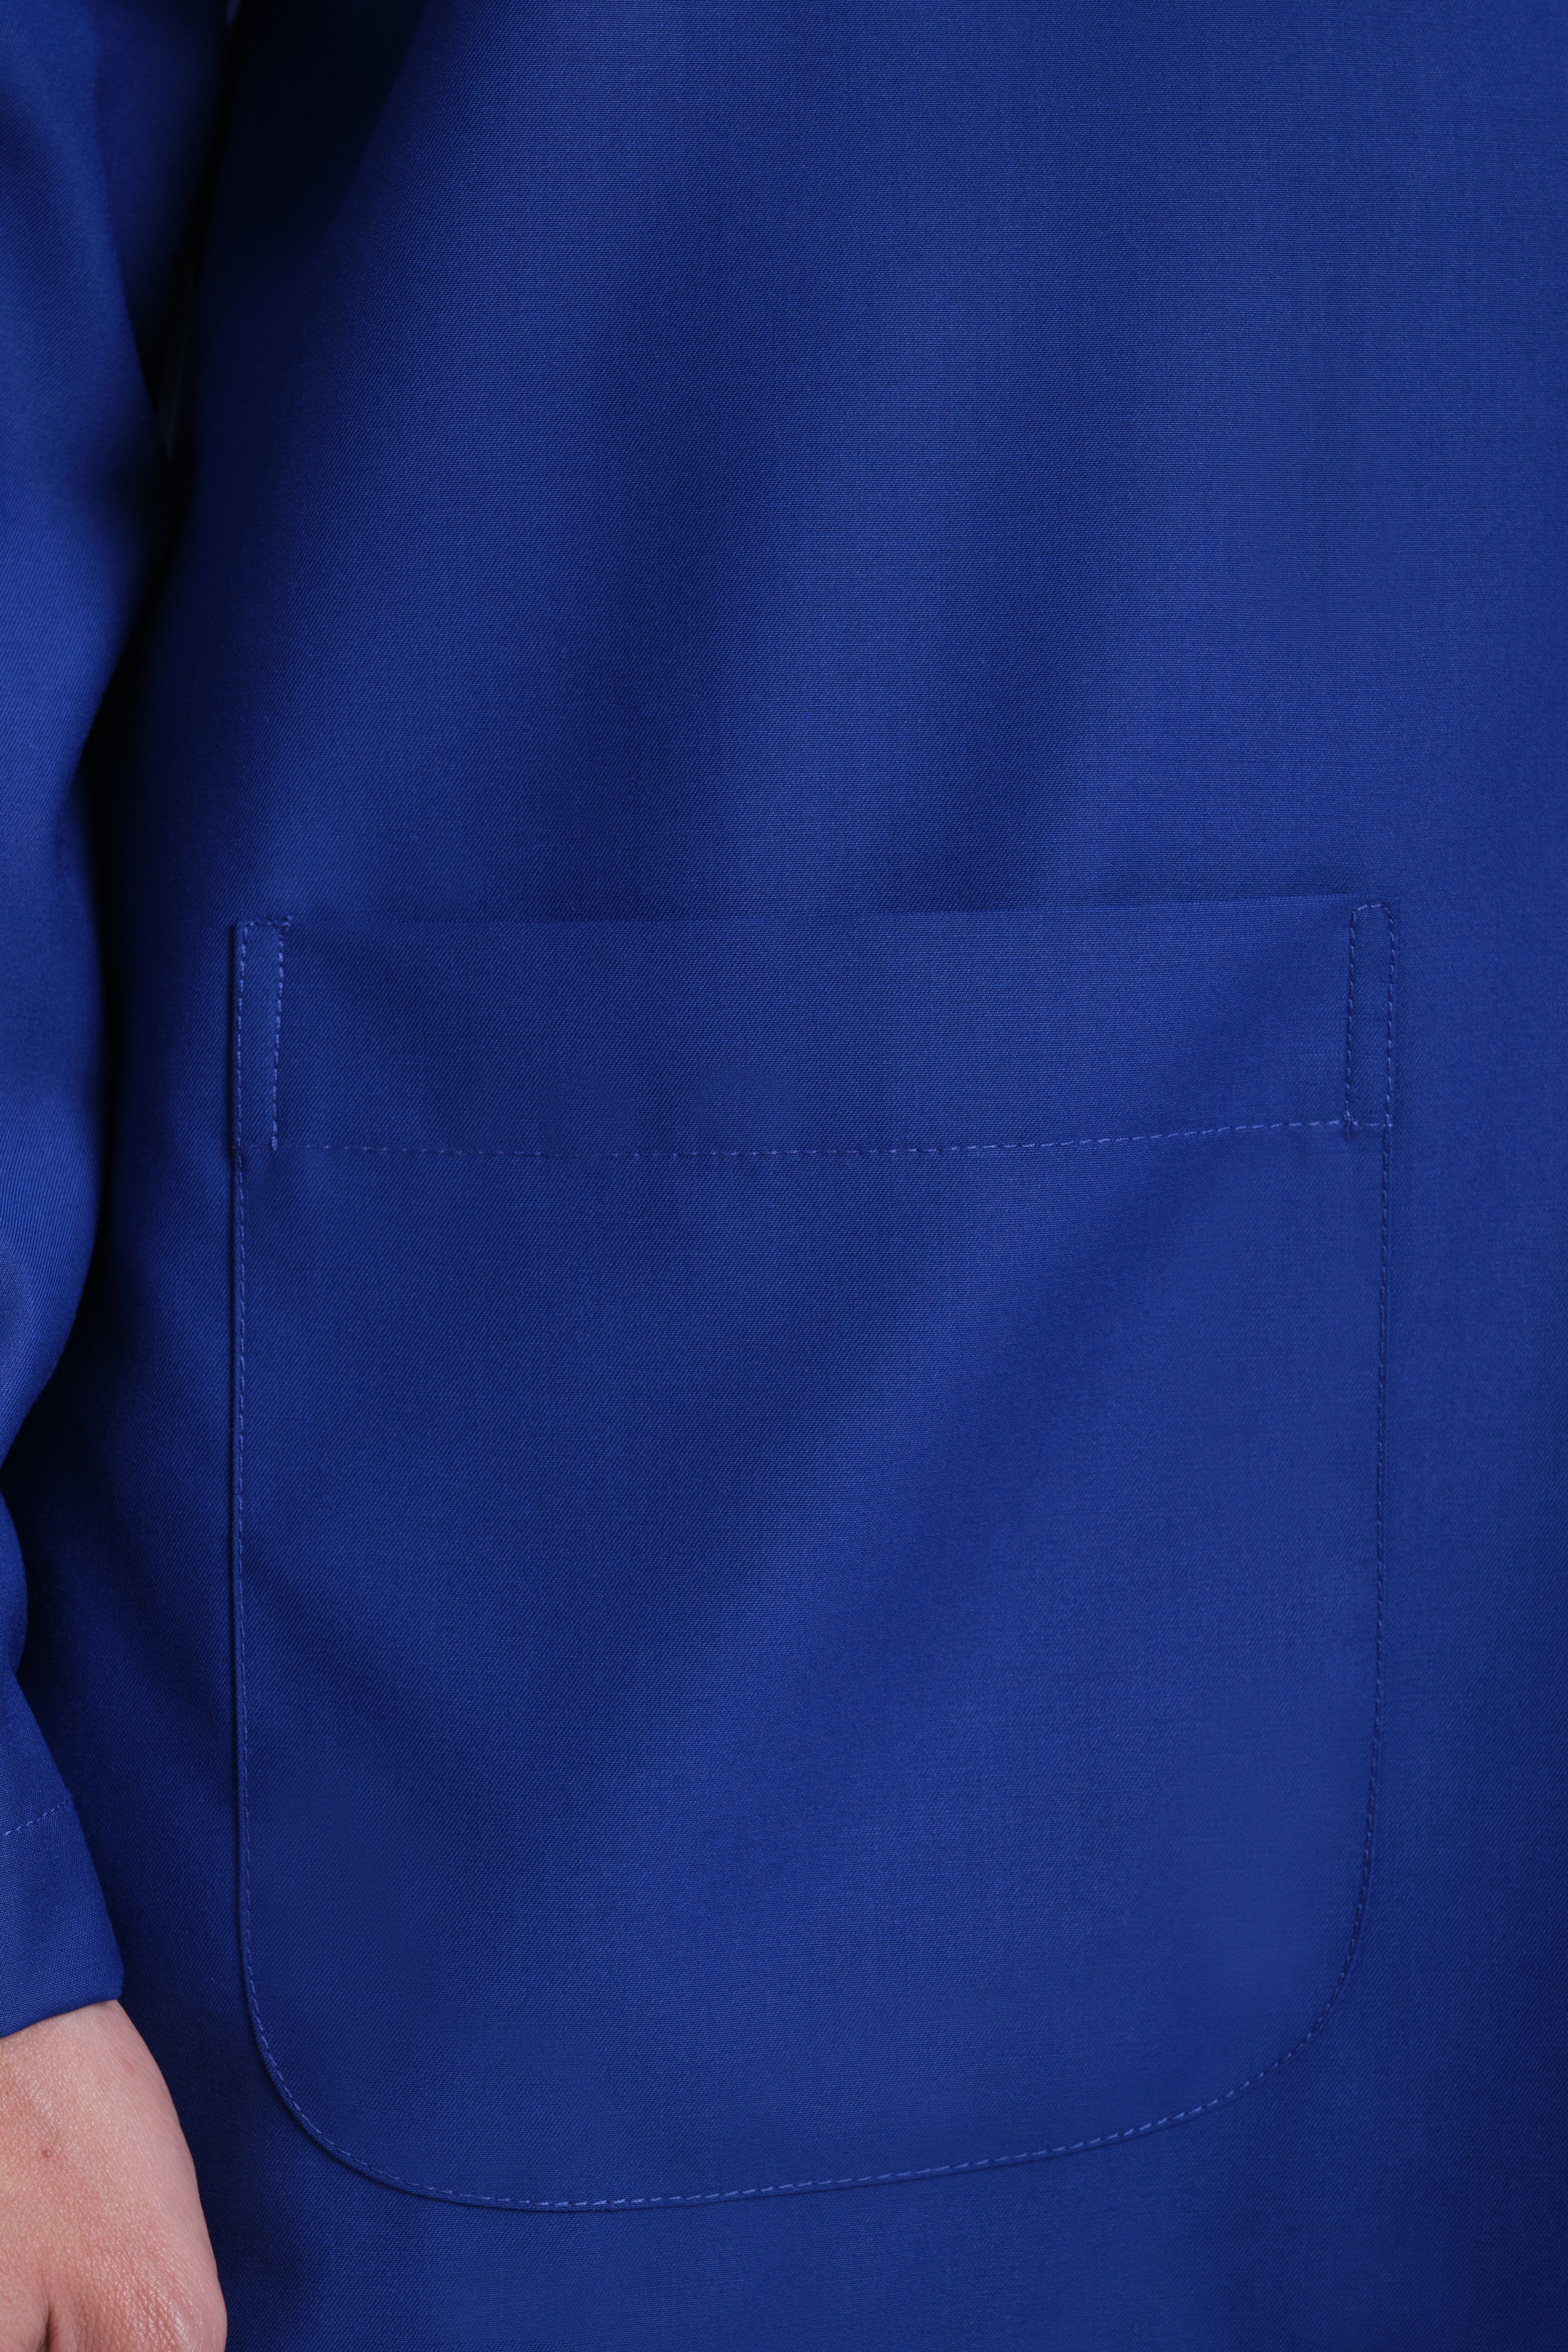 Patawali Modern Fit Baju Melayu Teluk Belanga - Royal Blue